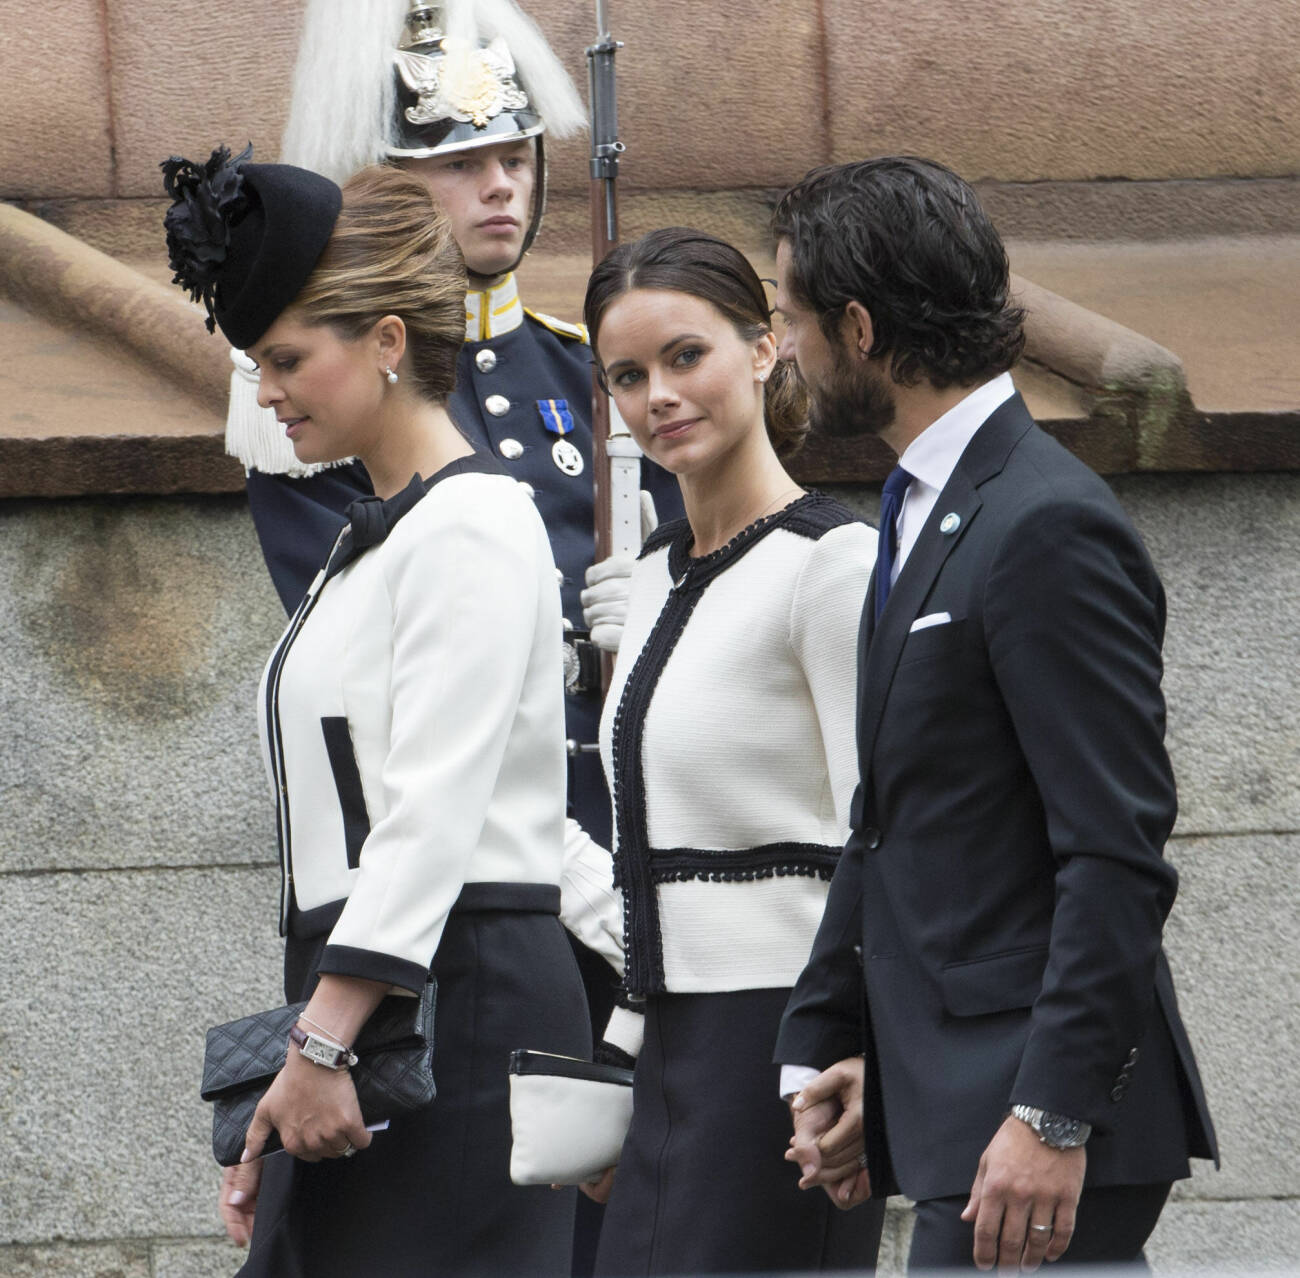 Kunglig klädkrock: Prinsessan Madeleine och prinsessan Sofia vid riksmötet 2015